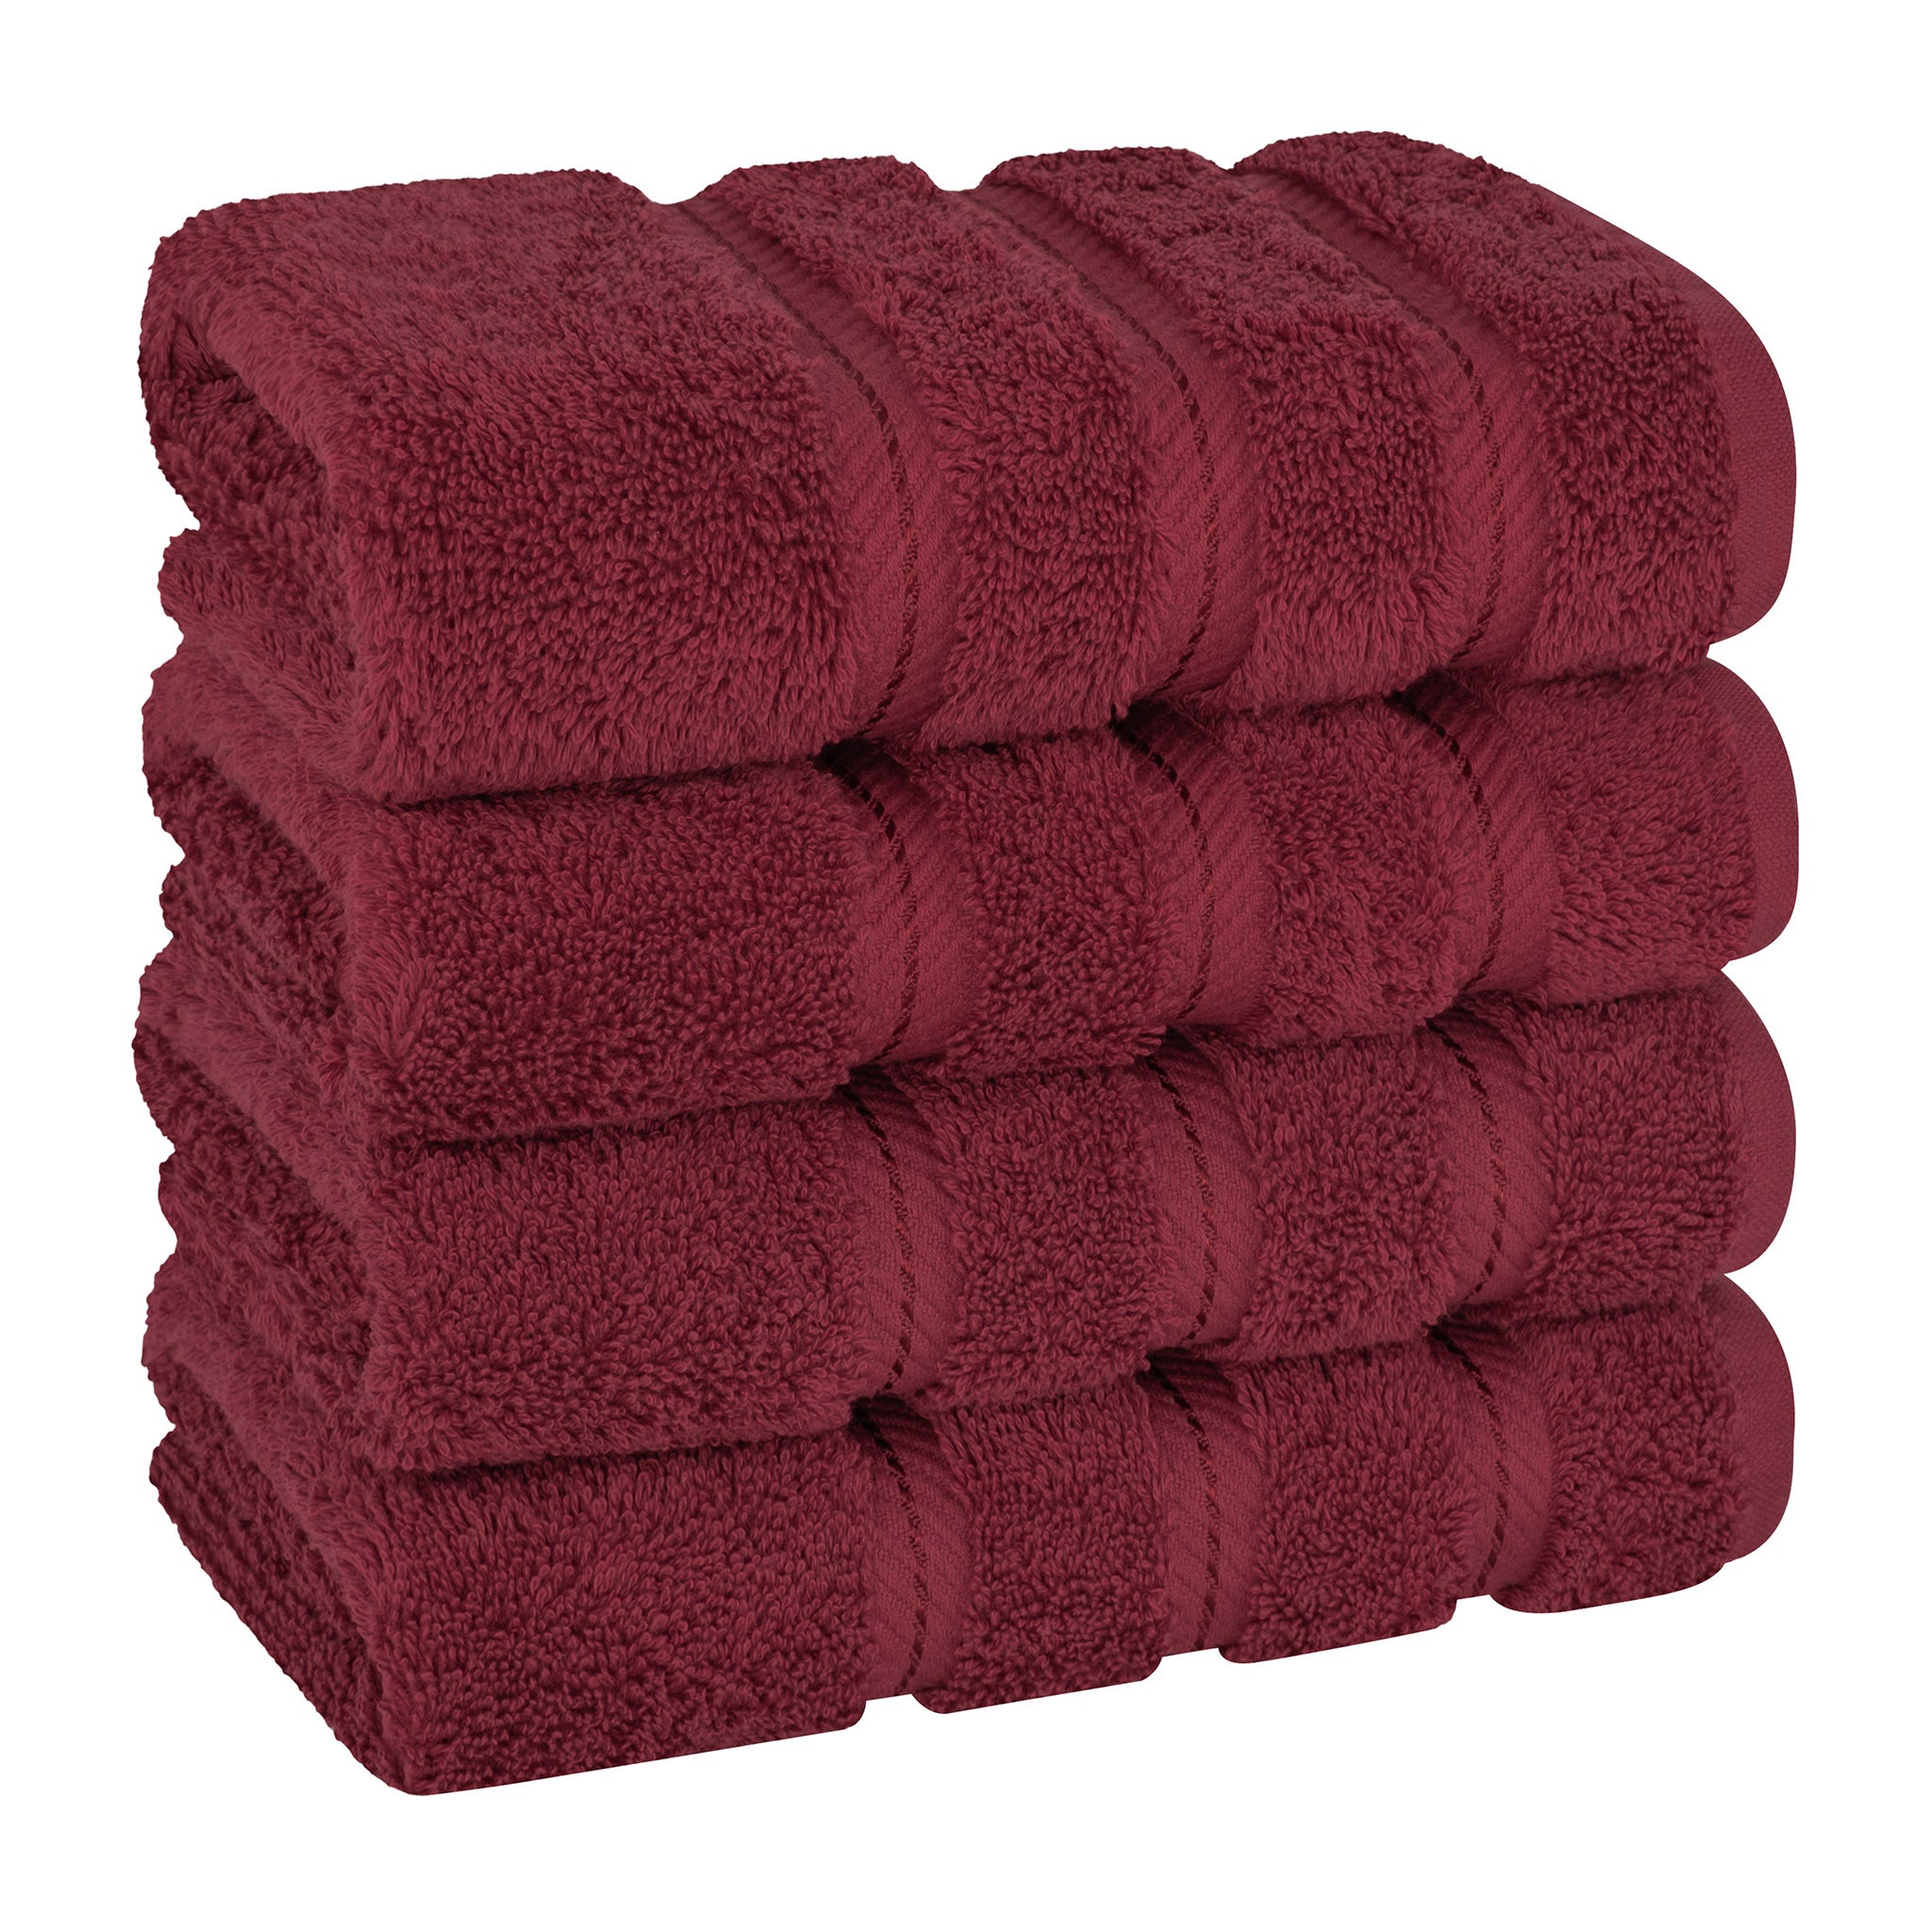 American Soft Linen 100% Turkish Cotton 4 Pack Hand Towel Set Wholesale bordeaux-red-1